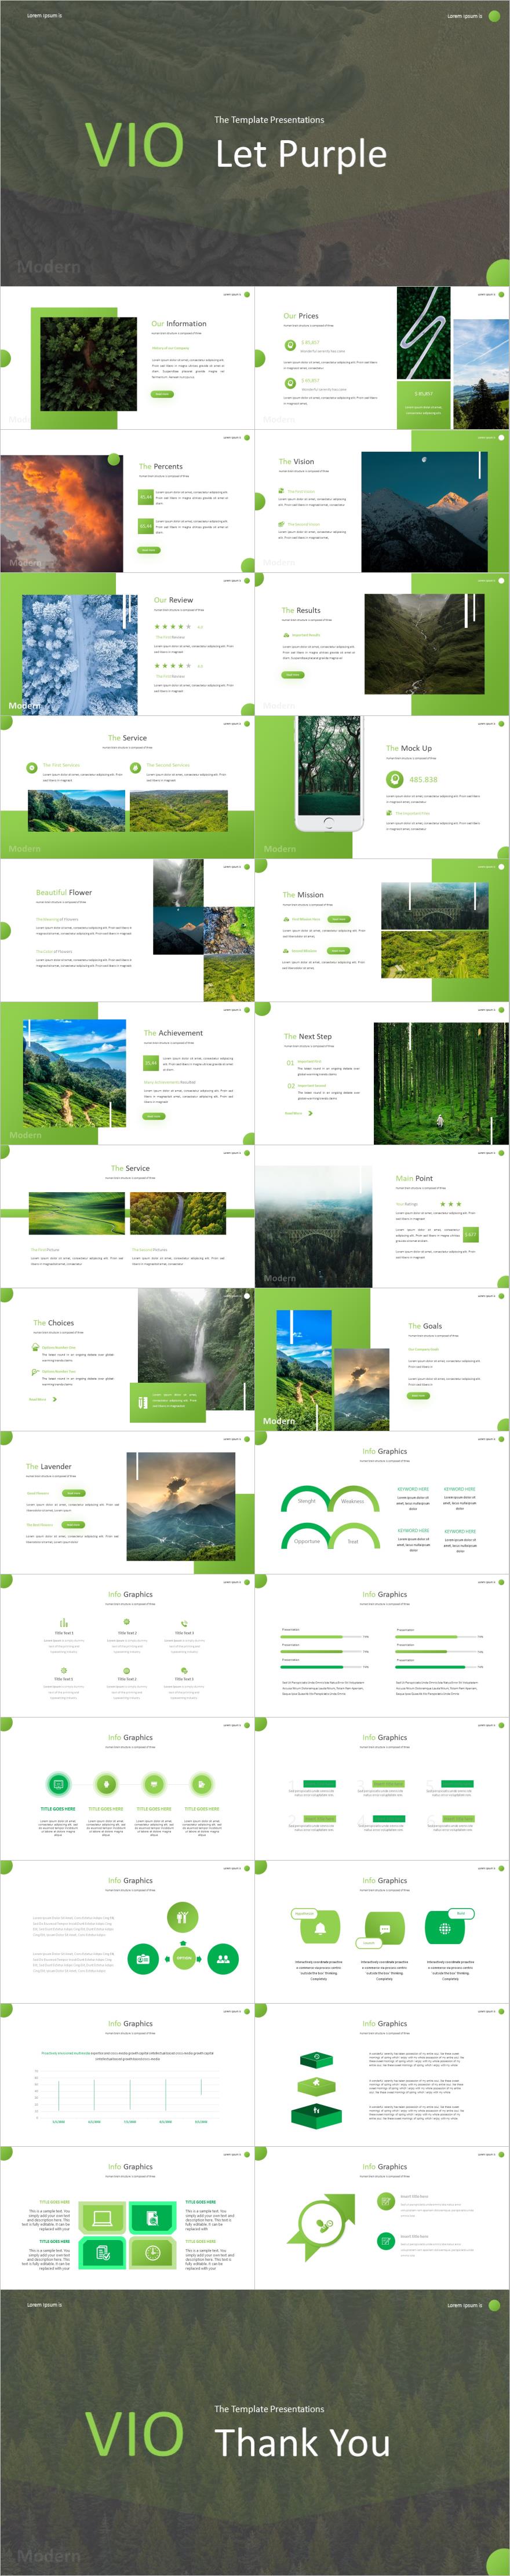 绿色杂志风自然风景项目介绍PPT模板下载